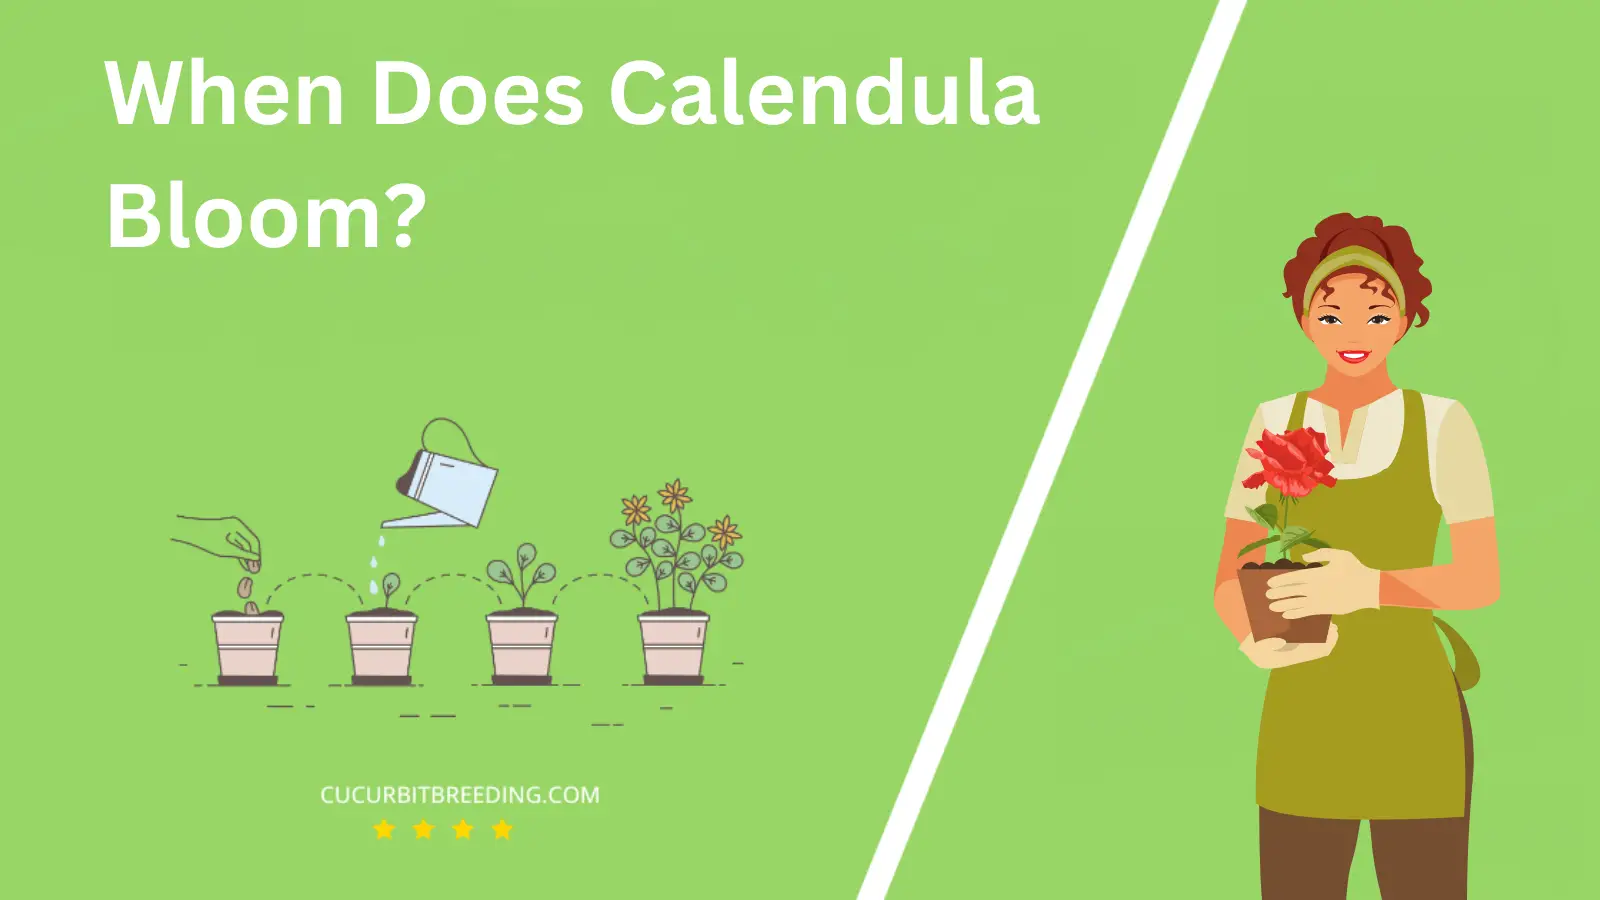 When Does Calendula Bloom?